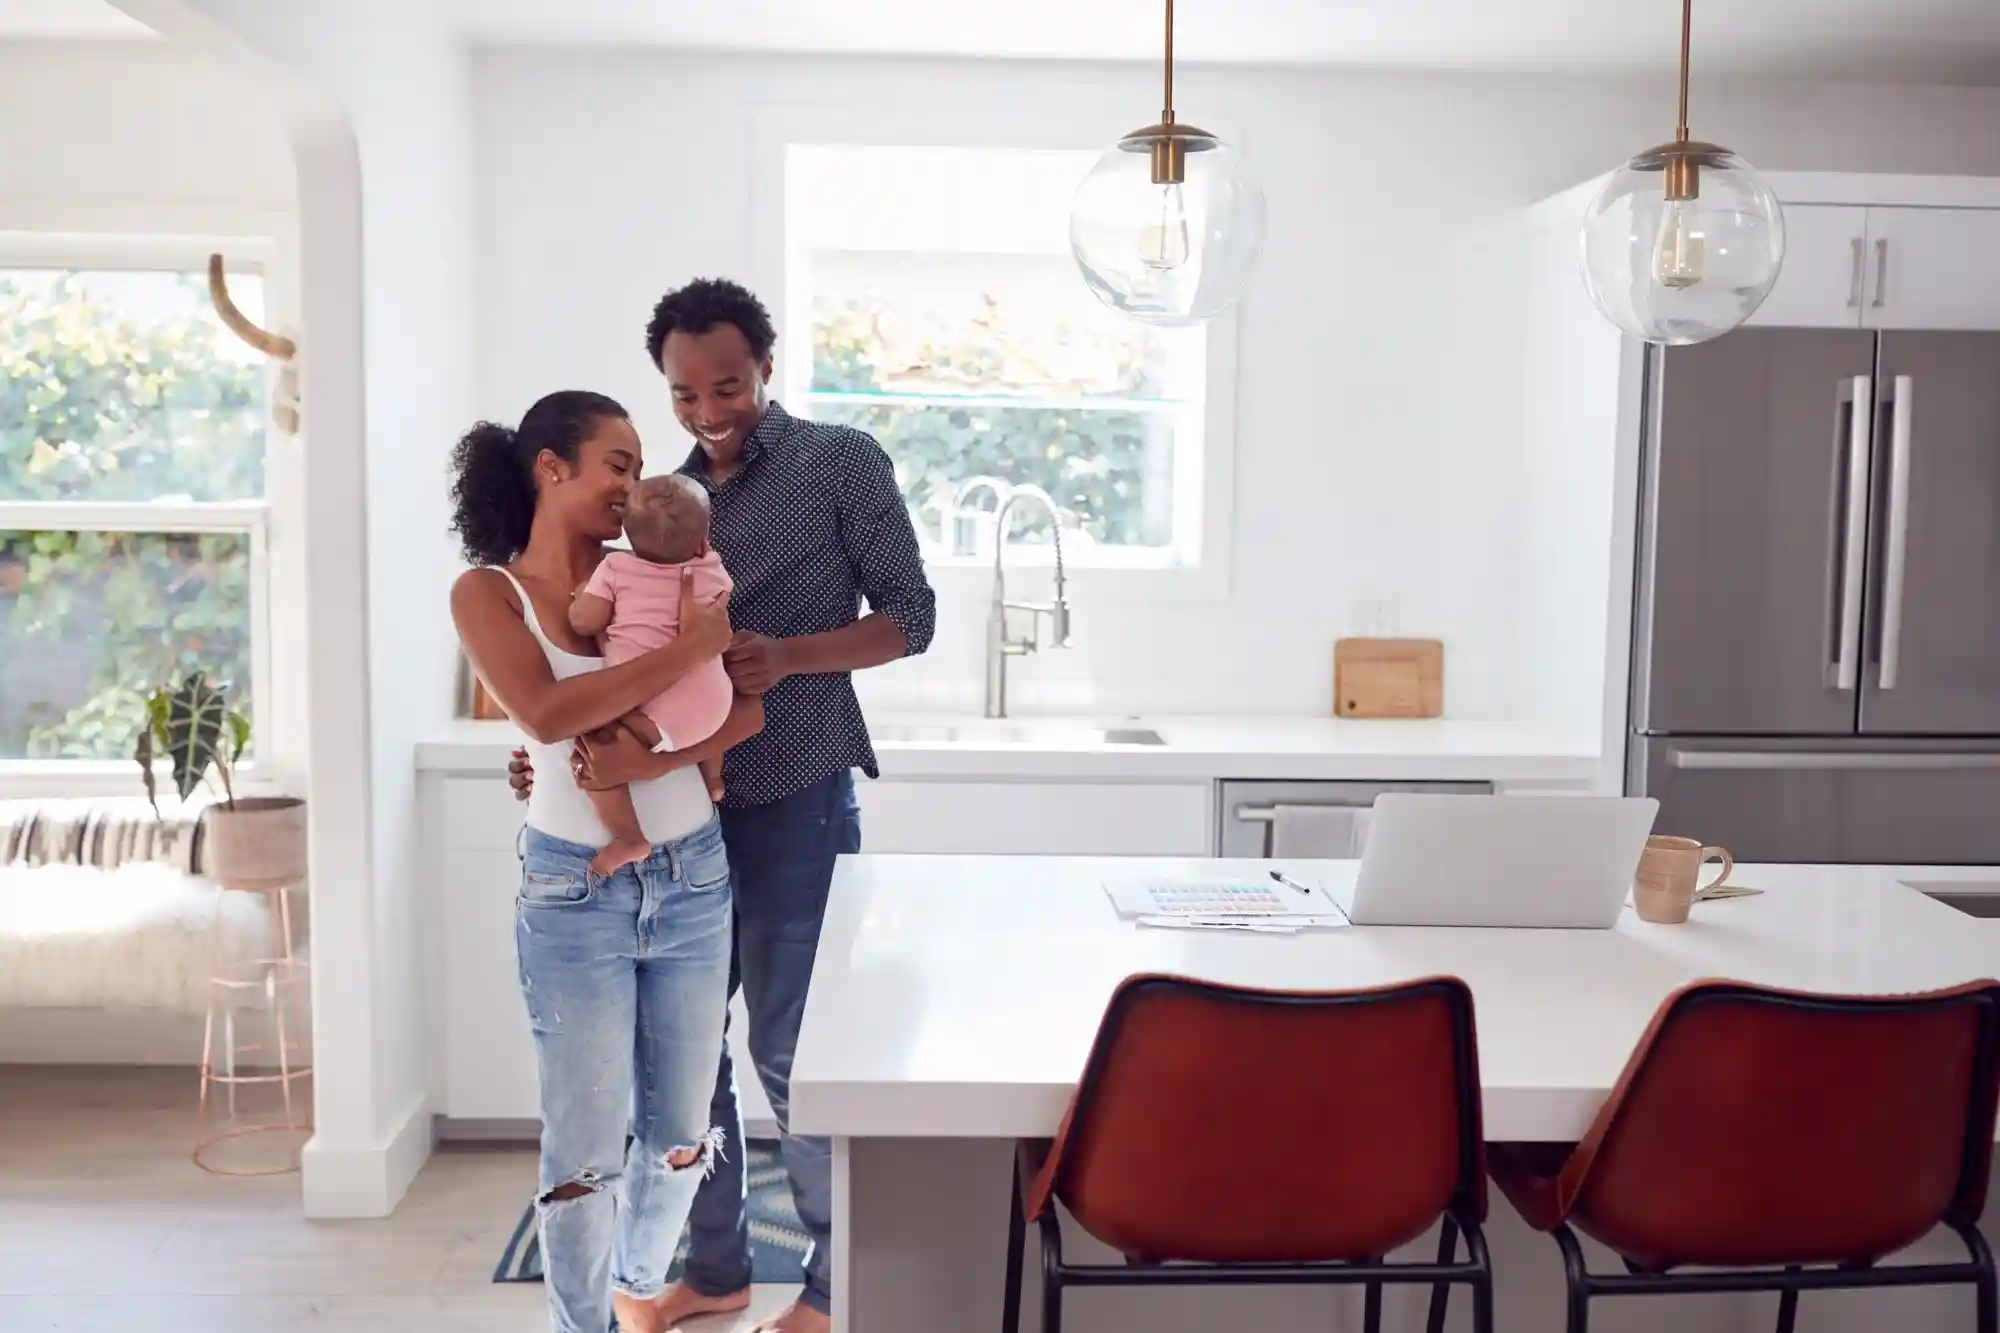 5 Melhores tipos de imóveis para viver a dois: imagem de casal com bebê em sua casa, com cadeiras, mesas, geladeira e espaço integrado.